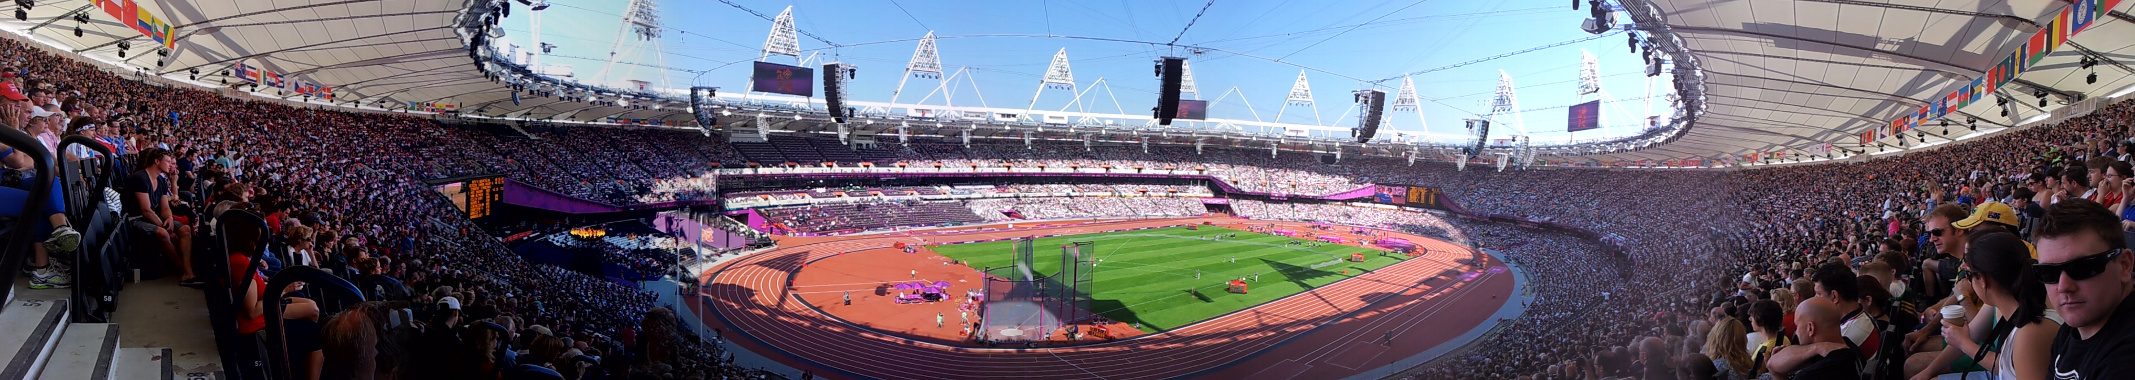 Panoramic View of Inside the Stadium